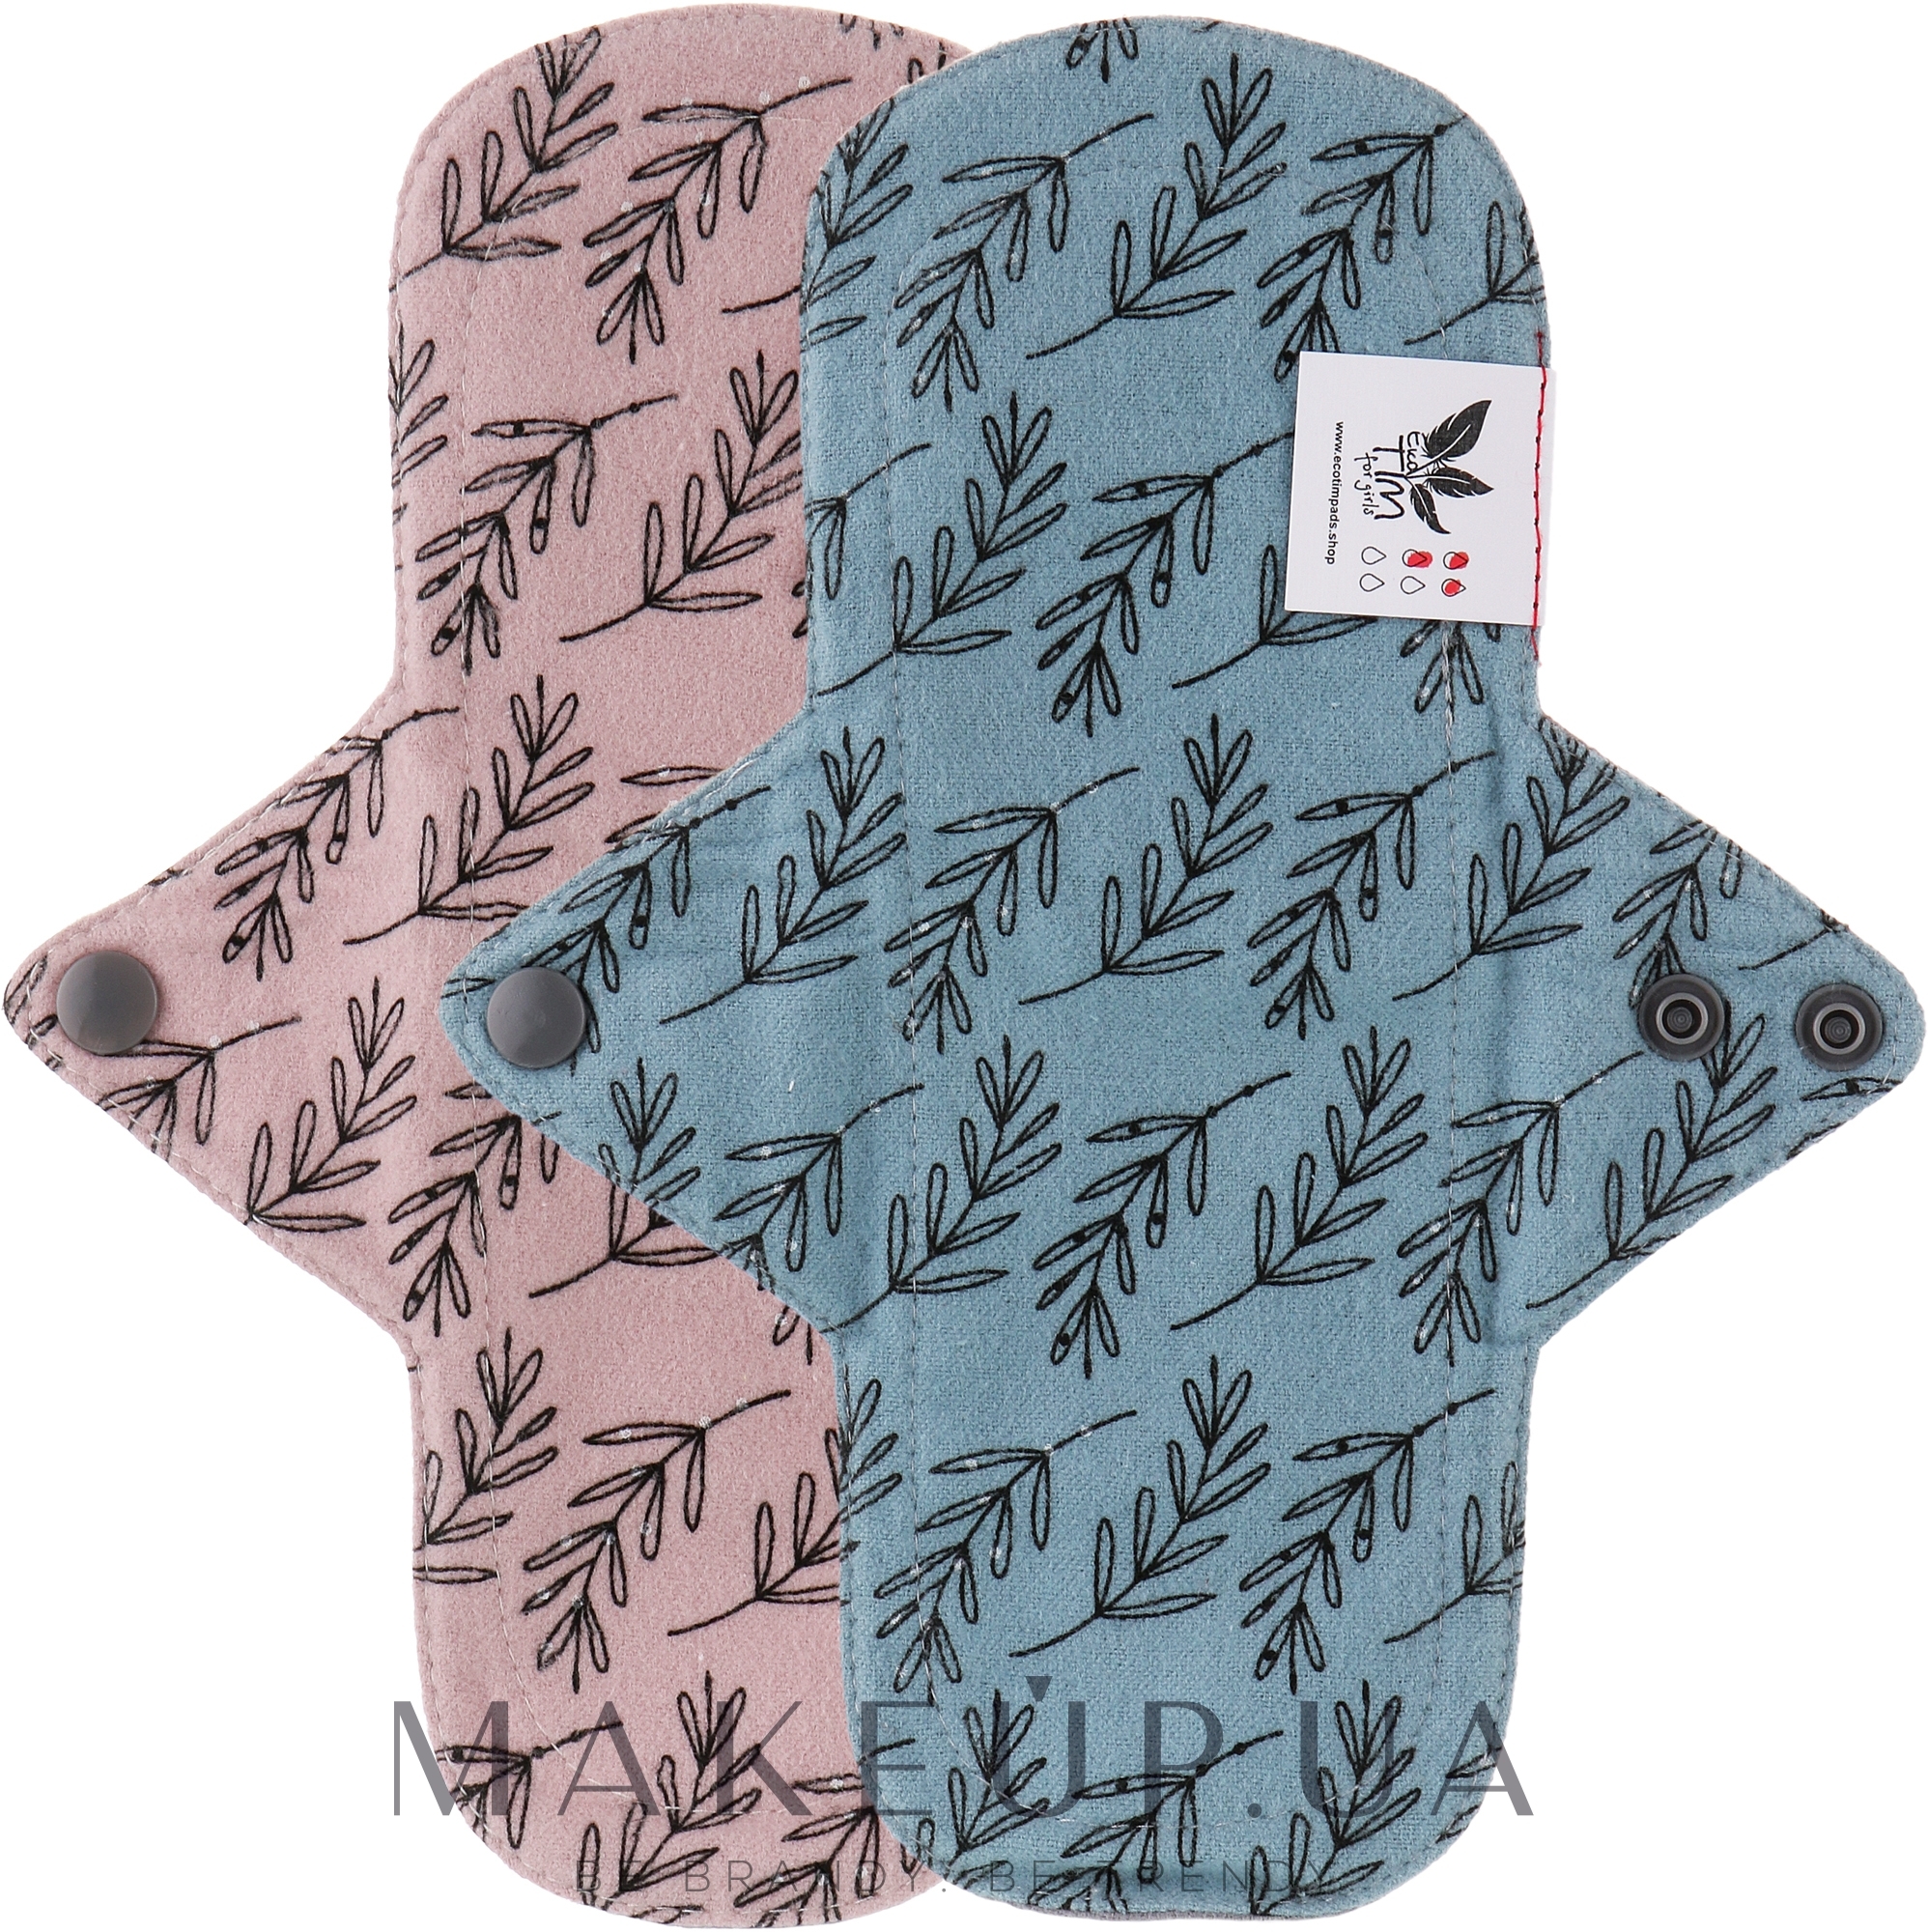 Многоразовая прокладка для менструации "Flannel", нормал, 3 капли, листья акации на розовом, листья акации на серо-синем - Ecotim For Girls — фото 2шт